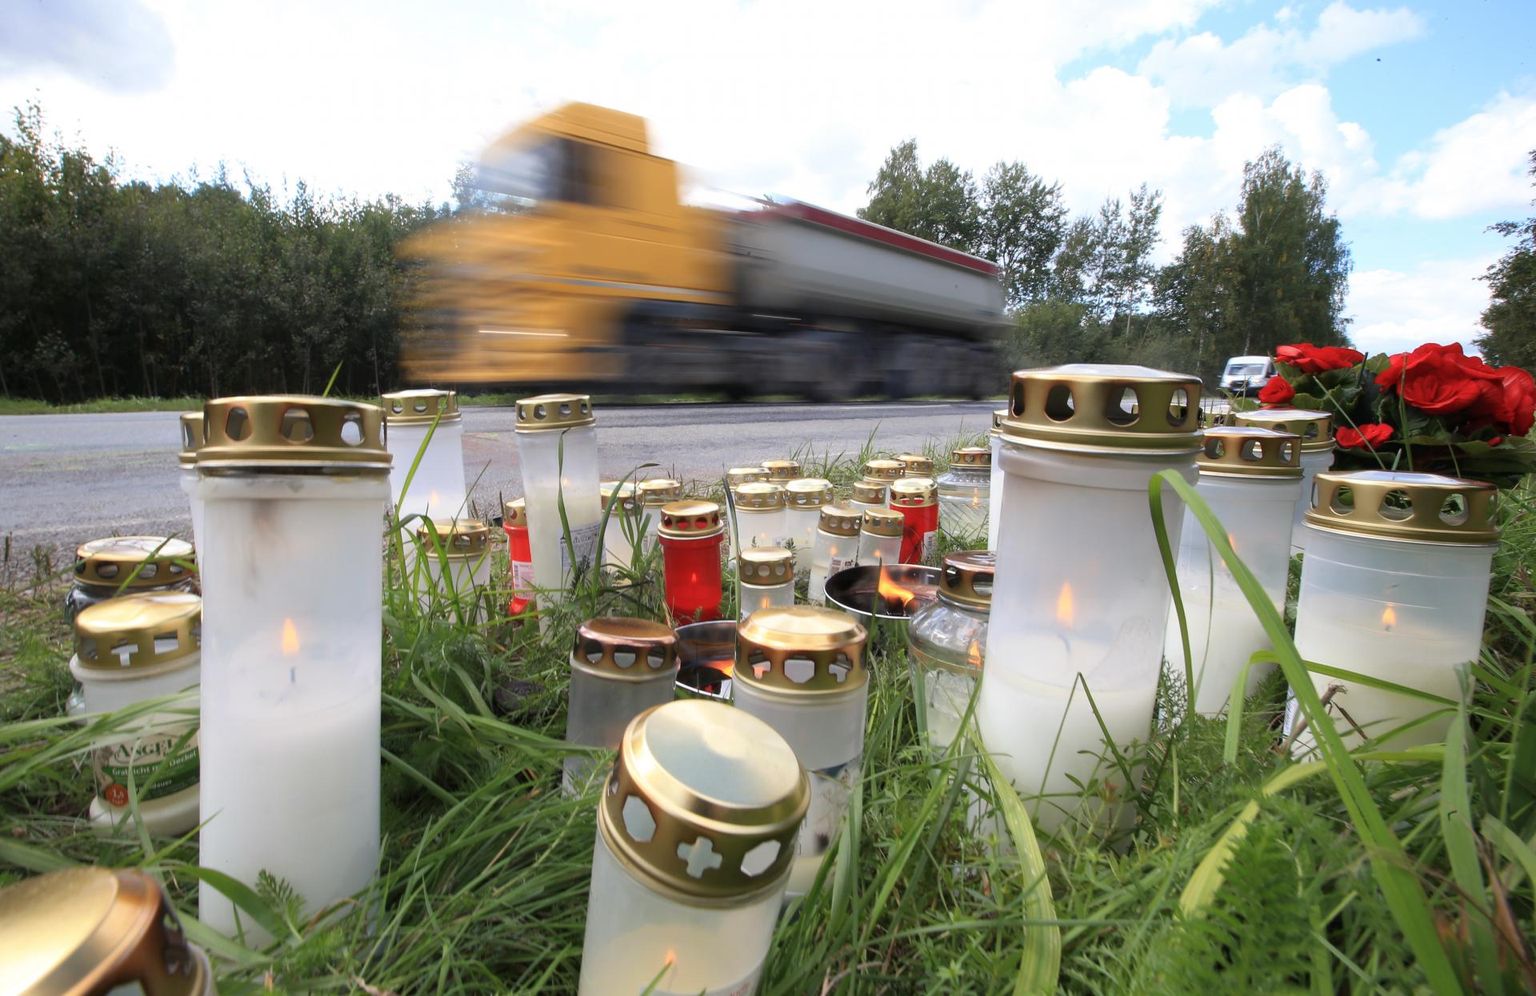 На следующий день после аварии погибших 15-летнюю девушку и 17-летнего юношу почтили памятью со свечами и цветами на месте происшествия.